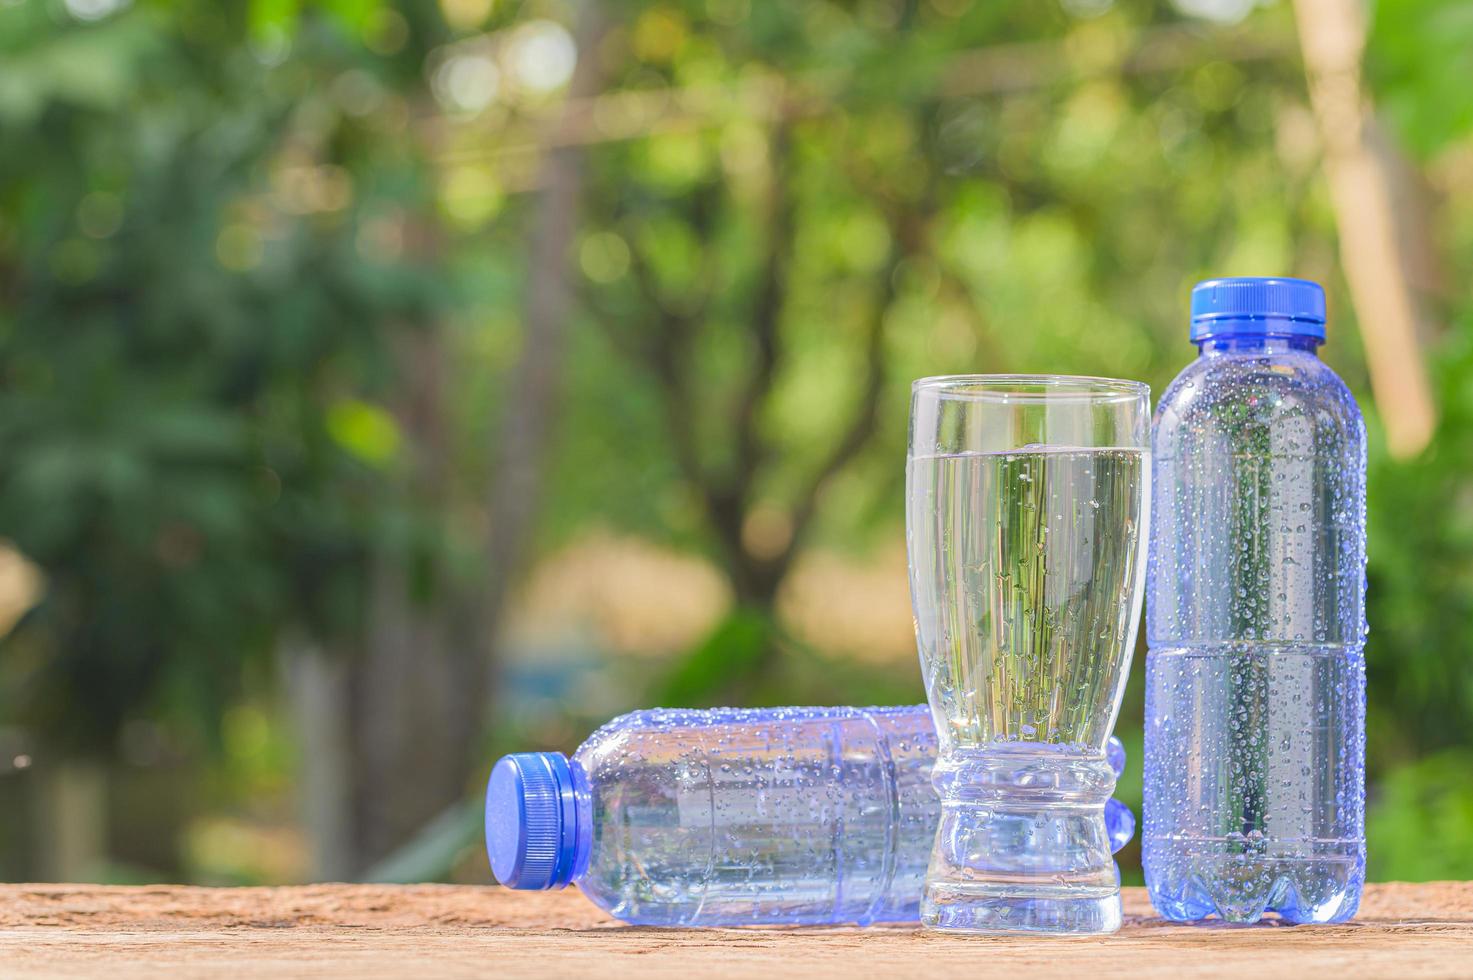 botellas de agua potable foto